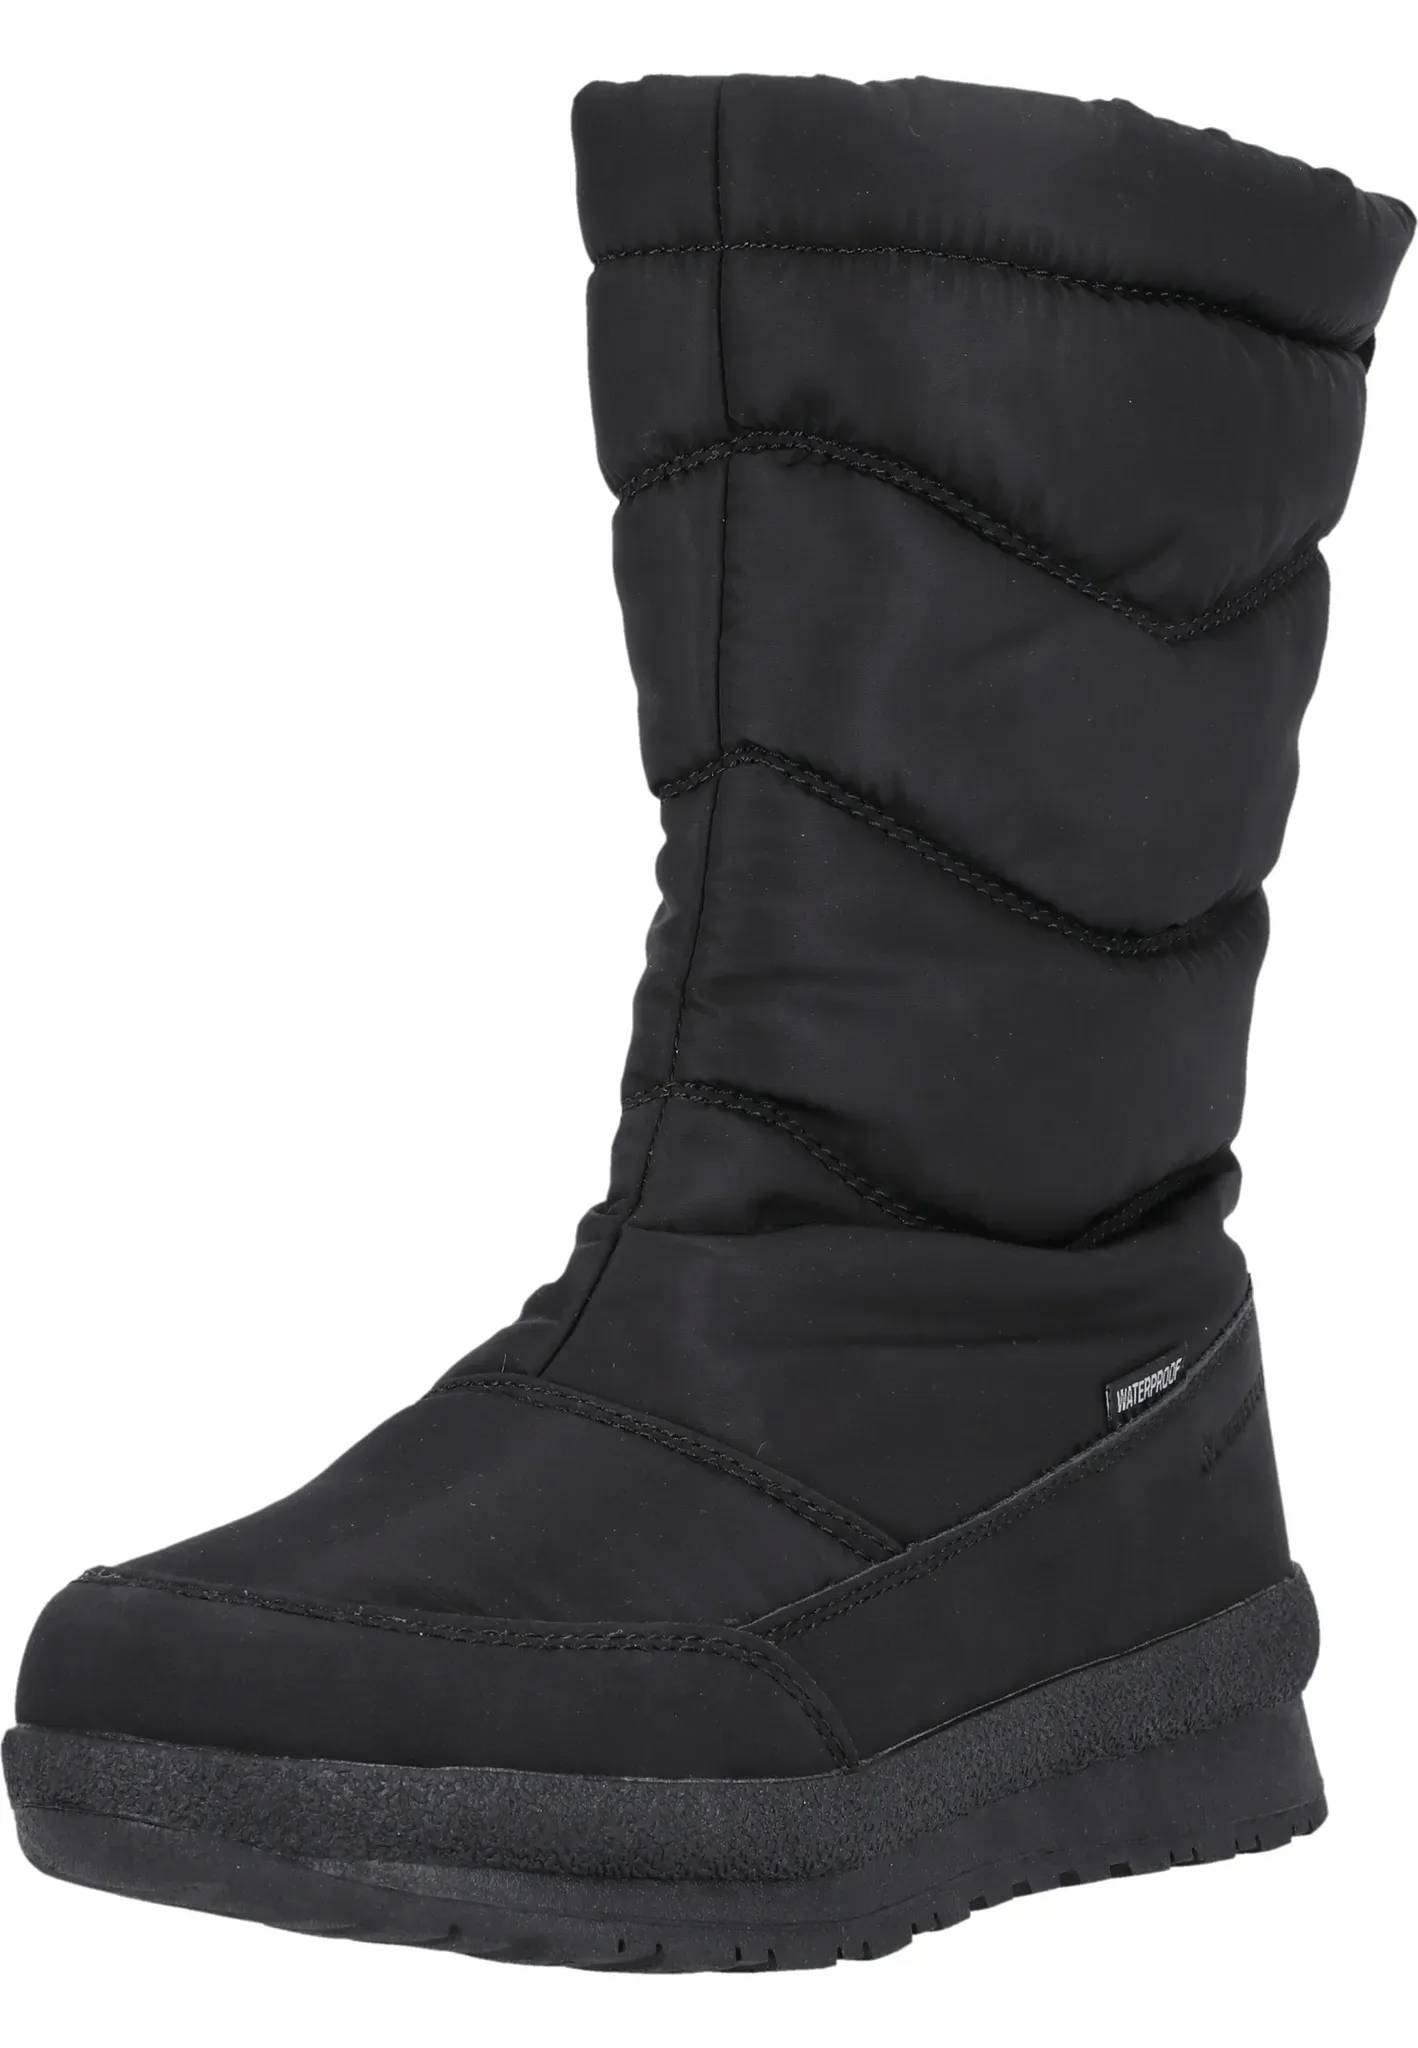 Stiefel WHISTLER "Vasor" Gr. 38, schwarz Schuhe Damen Outdoor-Schuhe im warmen gesteppten Design